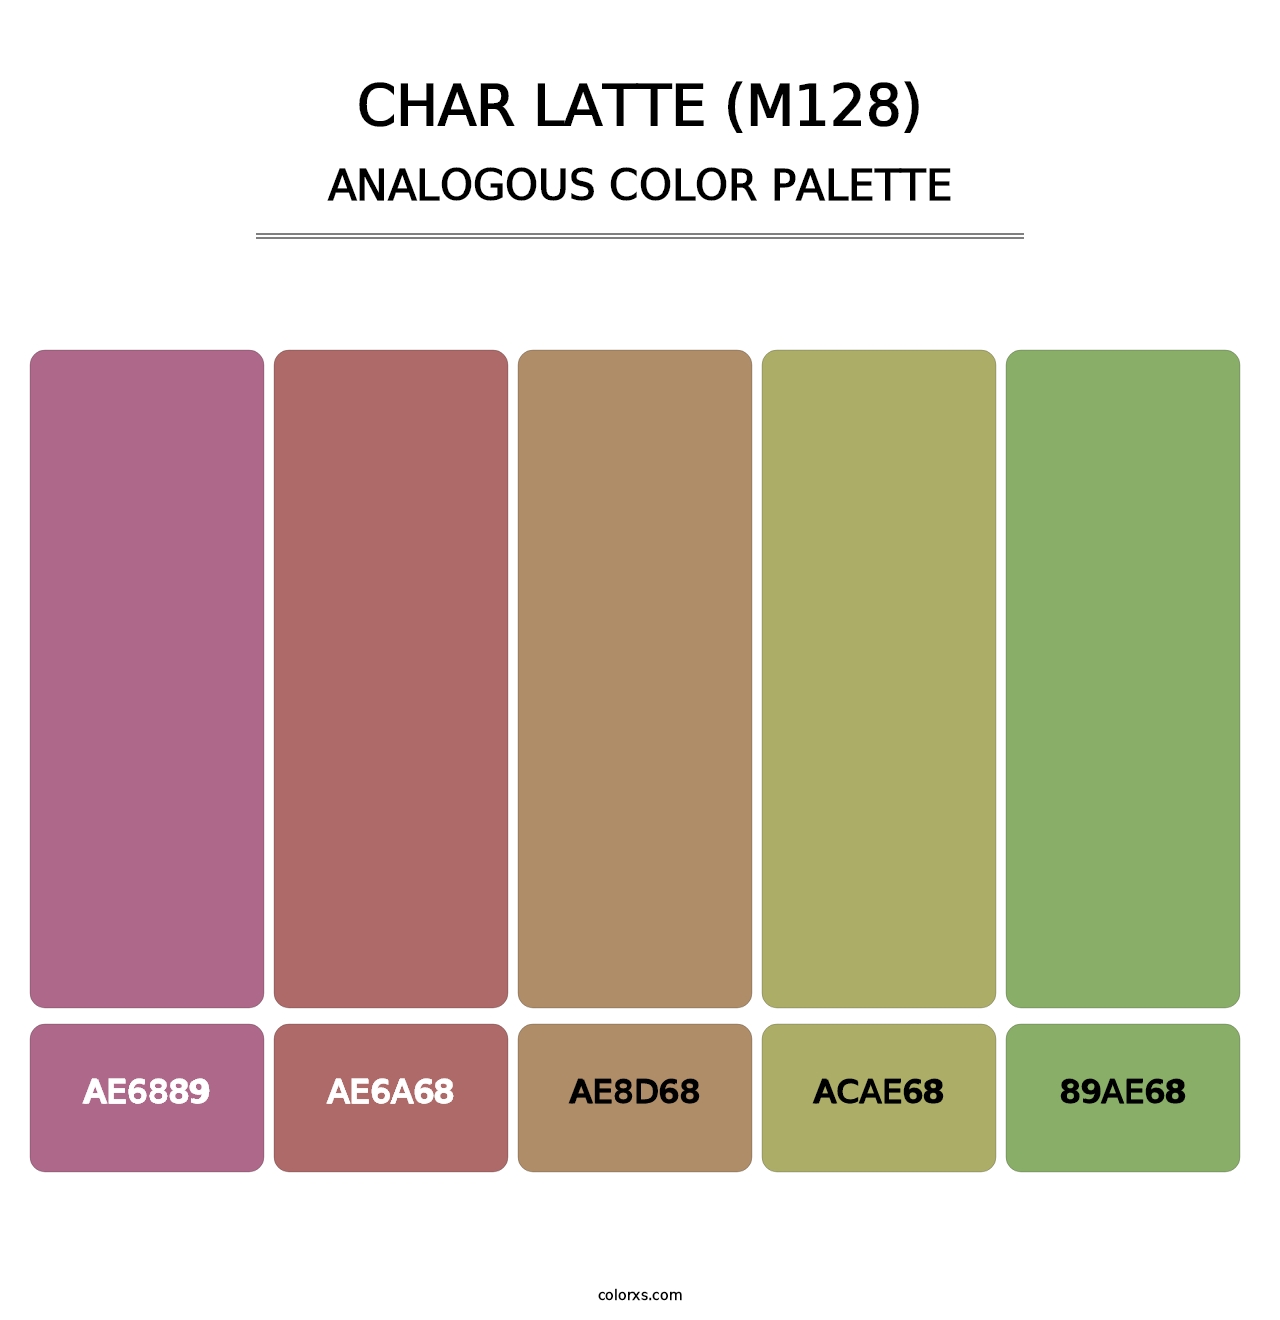 Char Latte (M128) - Analogous Color Palette